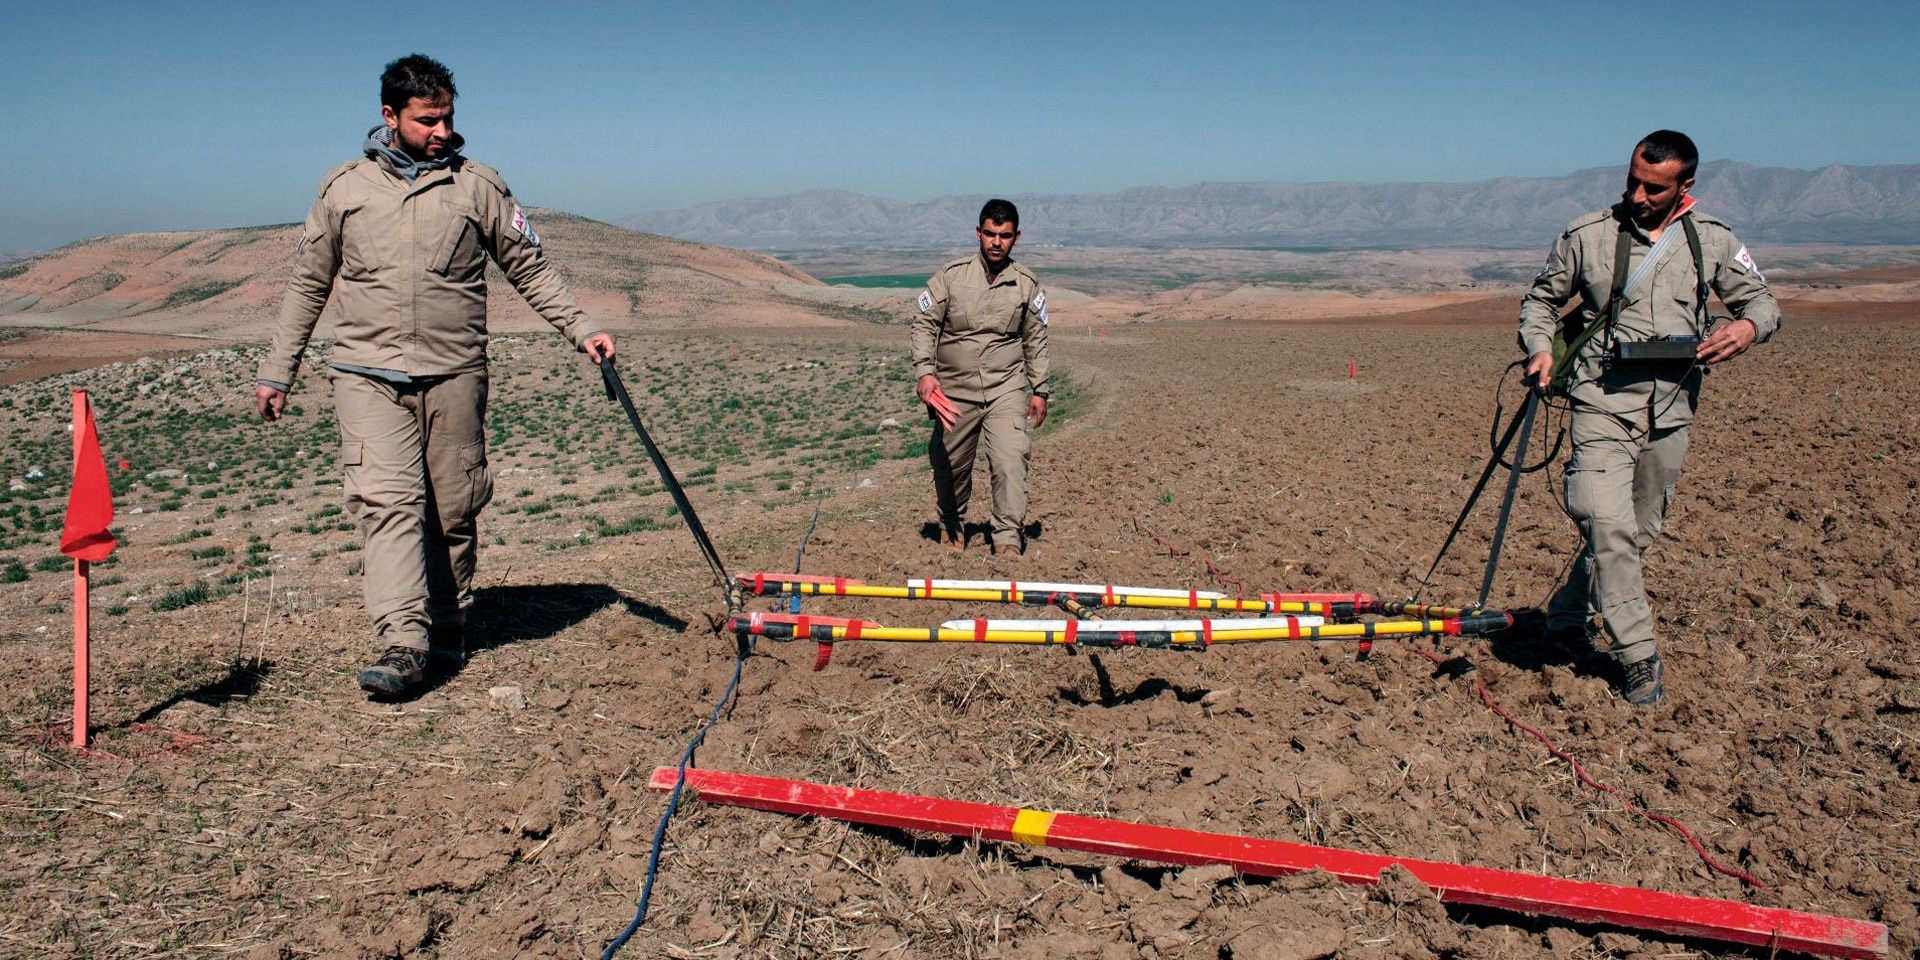  Trois hommes en combinaison procèdent au déminage d’un terrain dans le désert iraqien. 